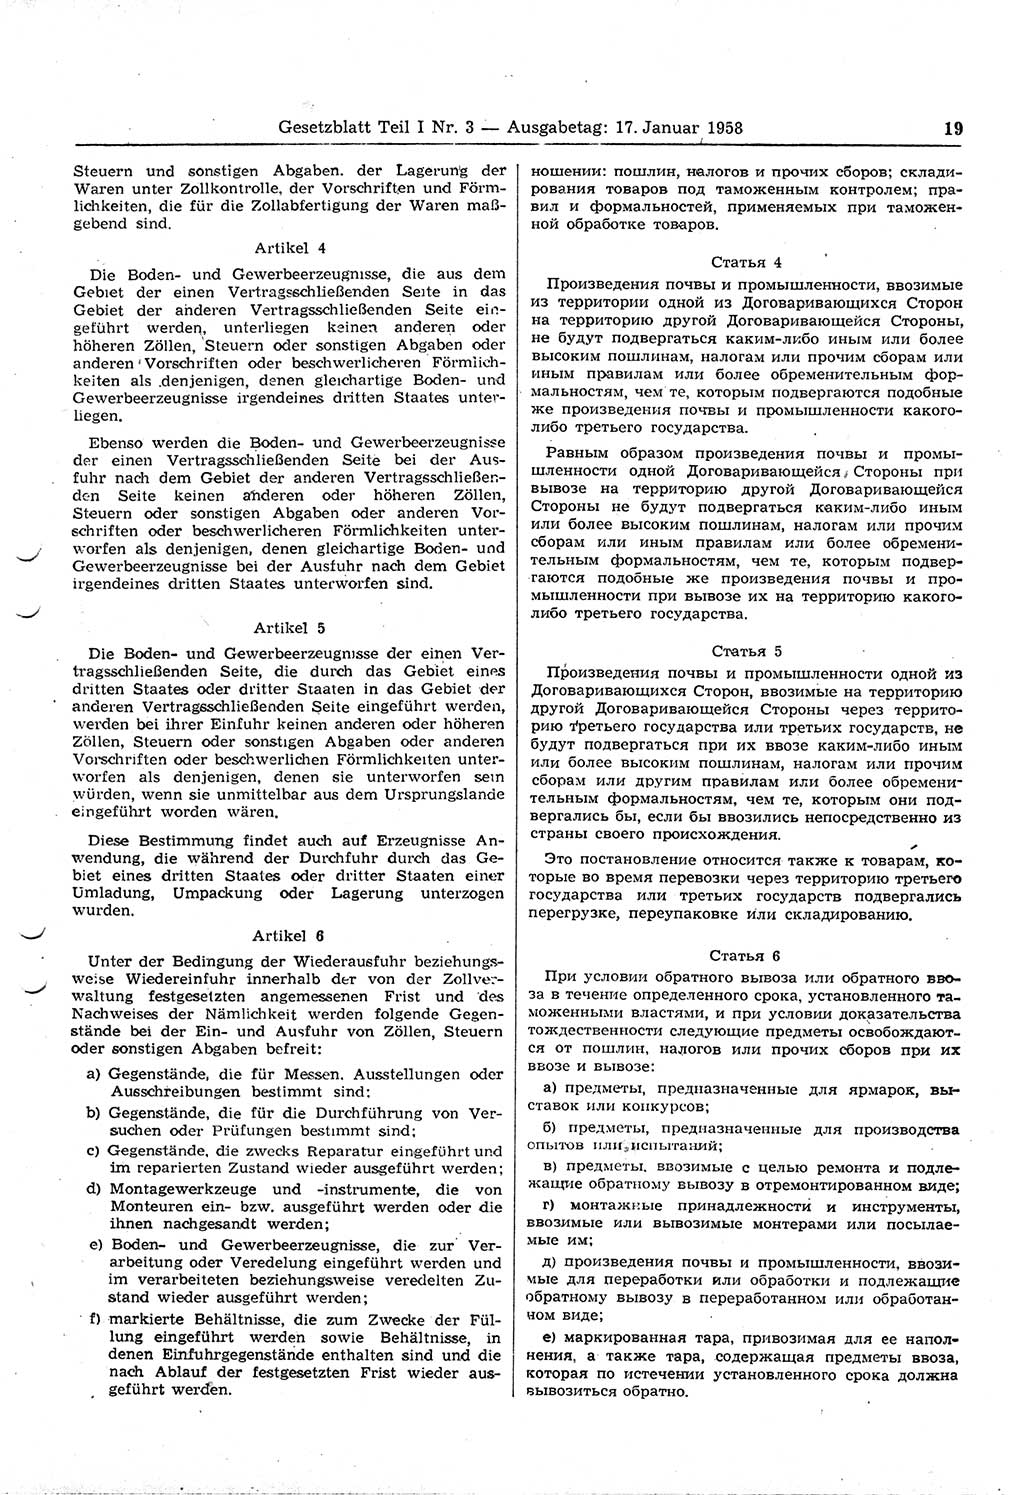 Gesetzblatt (GBl.) der Deutschen Demokratischen Republik (DDR) Teil Ⅰ 1958, Seite 19 (GBl. DDR Ⅰ 1958, S. 19)